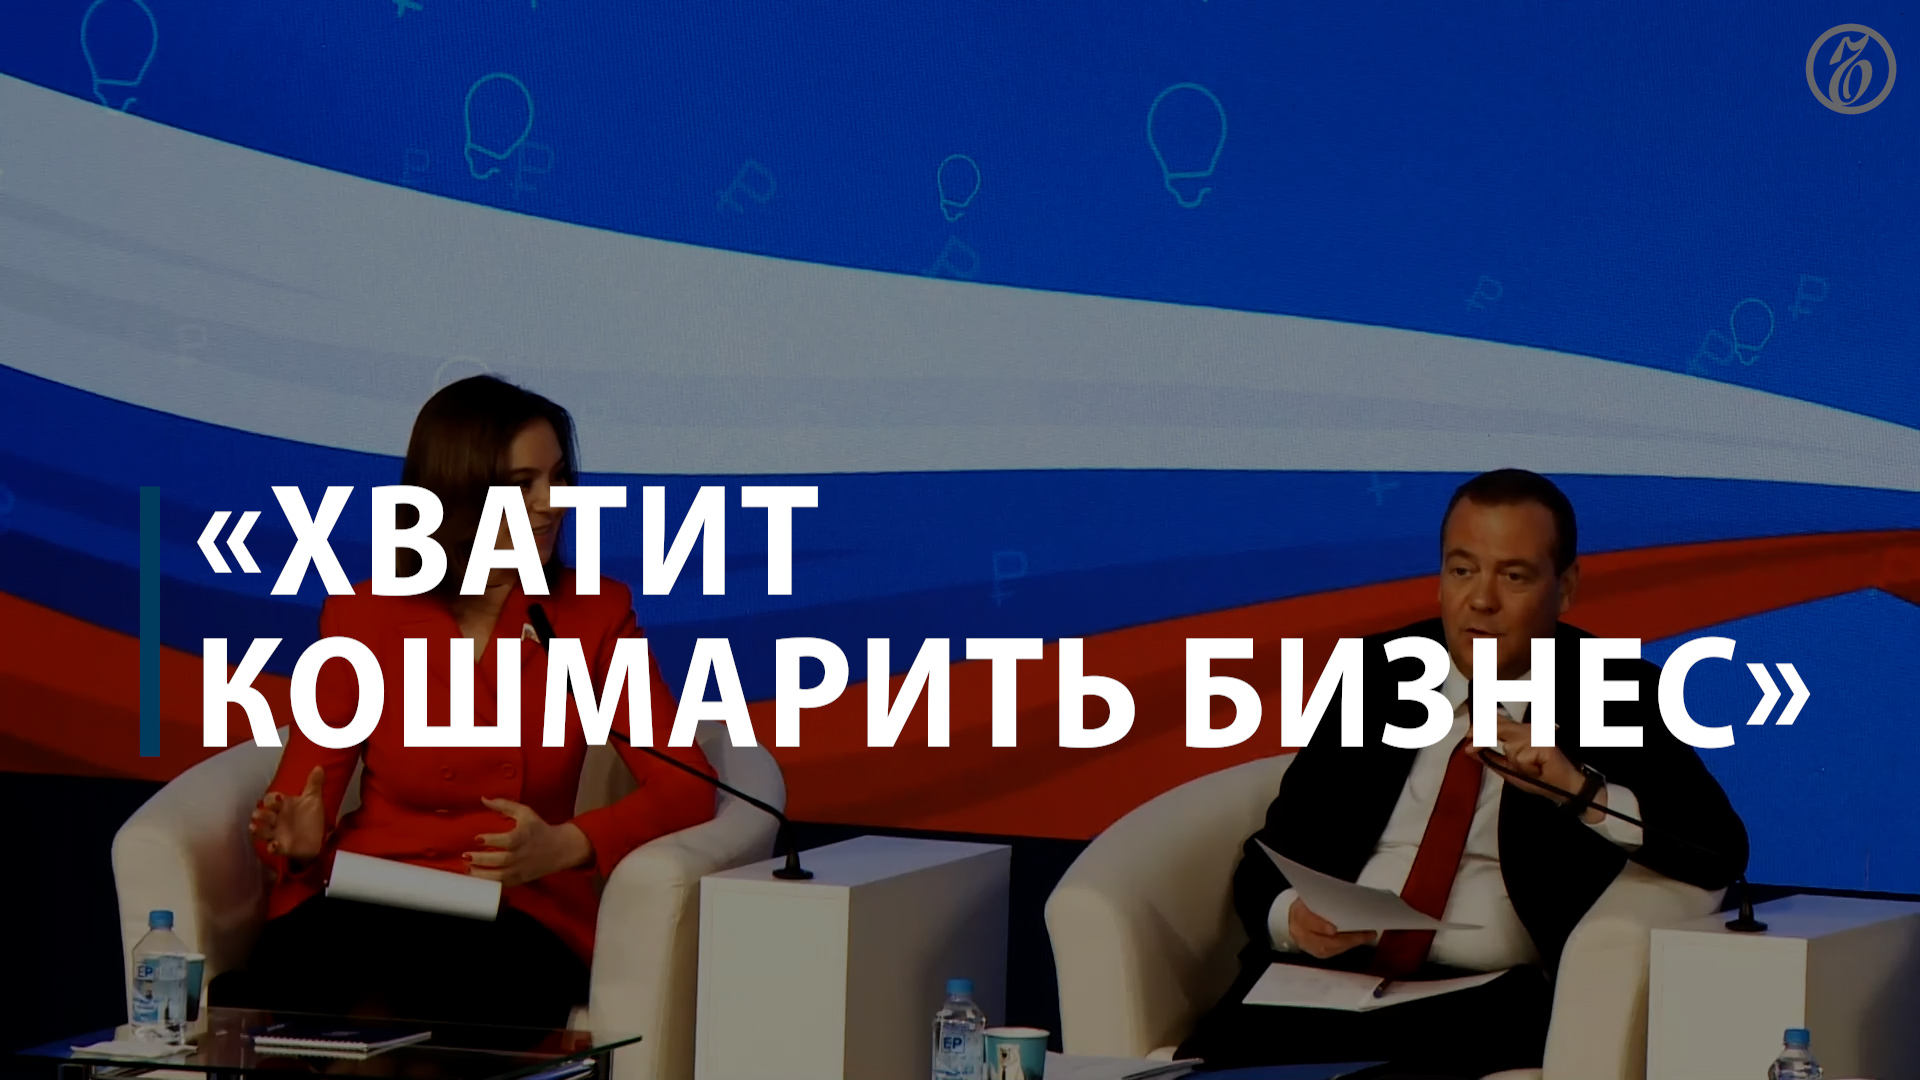 Медведев: бизнес кошмарят до сих пор